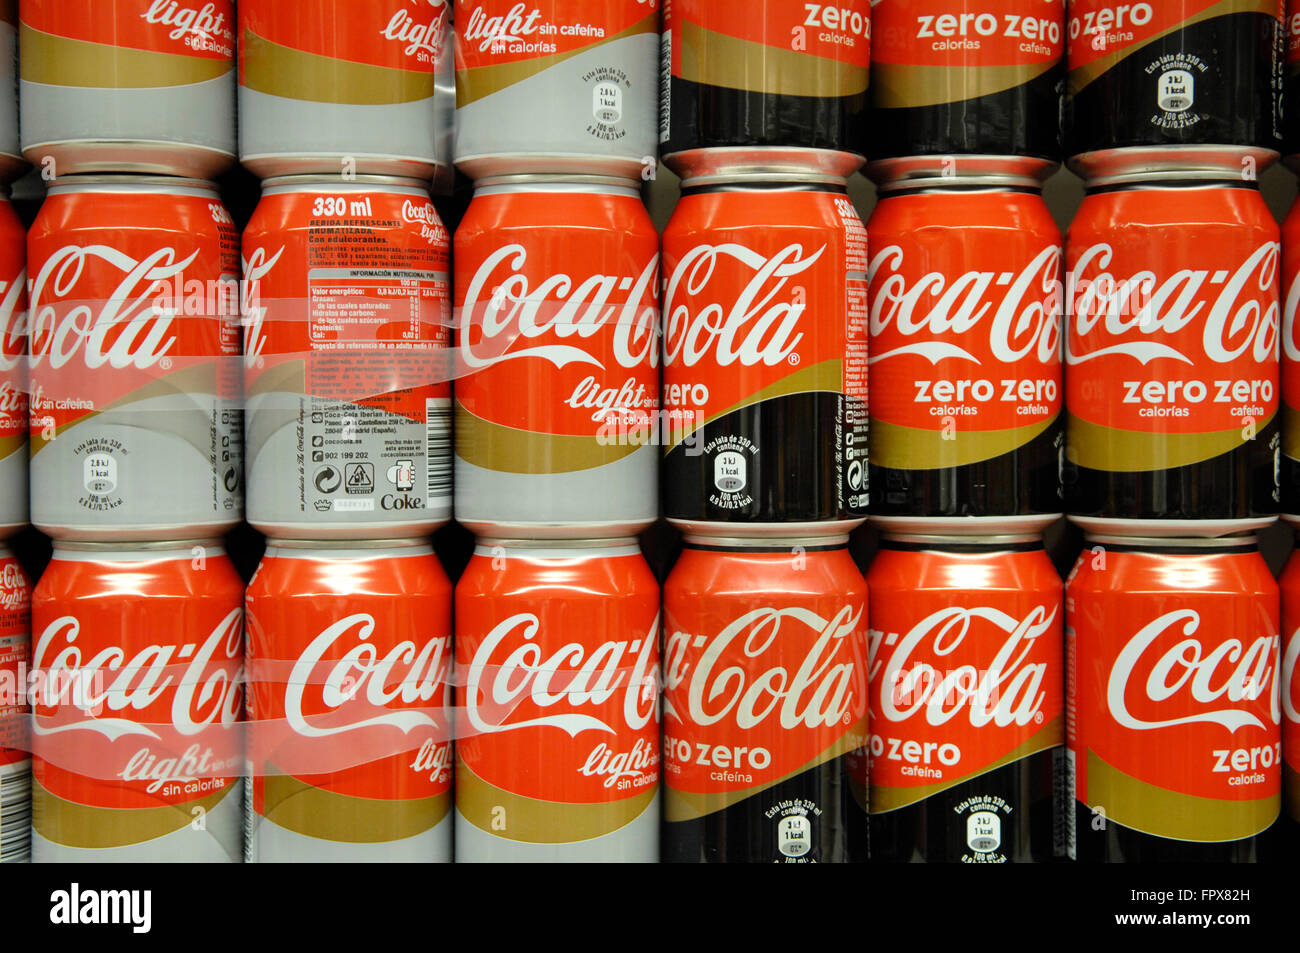 Close up of Coca Cola Zero Light boîtes affichées dans un supermarché Carrefour Malaga Espagne. Banque D'Images